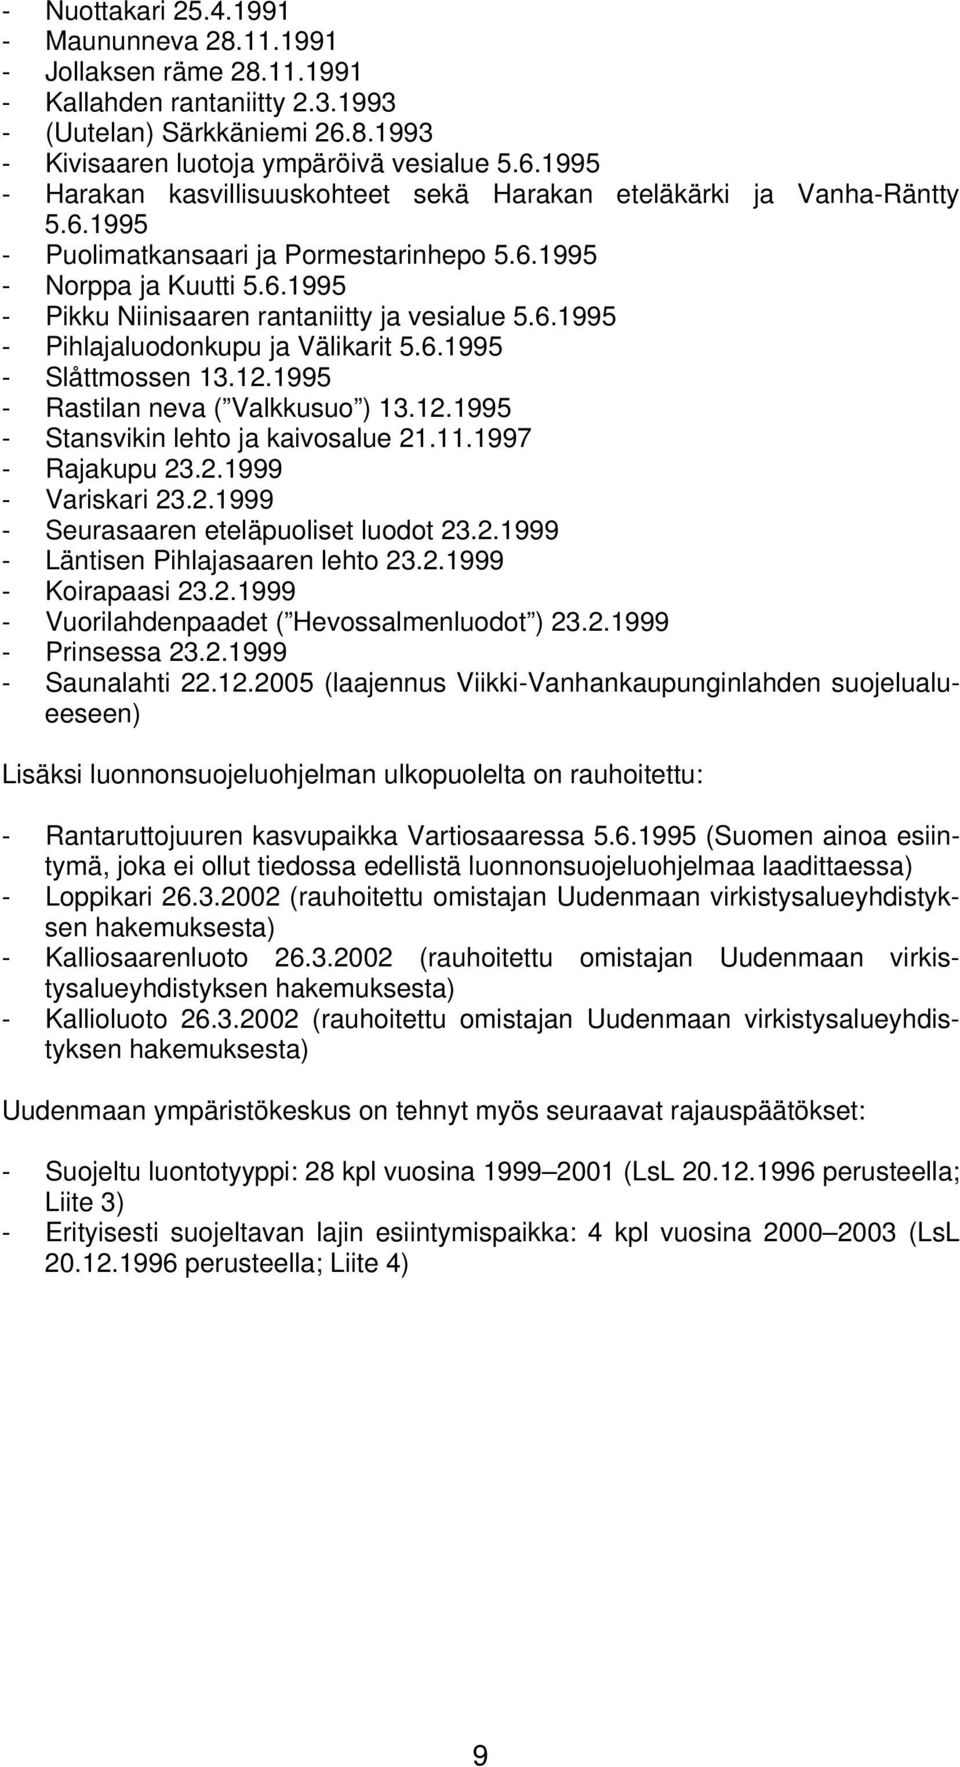 6.1995 - Pikku Niinisaaren rantaniitty ja vesialue 5.6.1995 - Pihlajaluodonkupu ja Välikarit 5.6.1995 - Slåttmossen 13.12.1995 - Rastilan neva ( Valkkusuo ) 13.12.1995 - Stansvikin lehto ja kaivosalue 21.